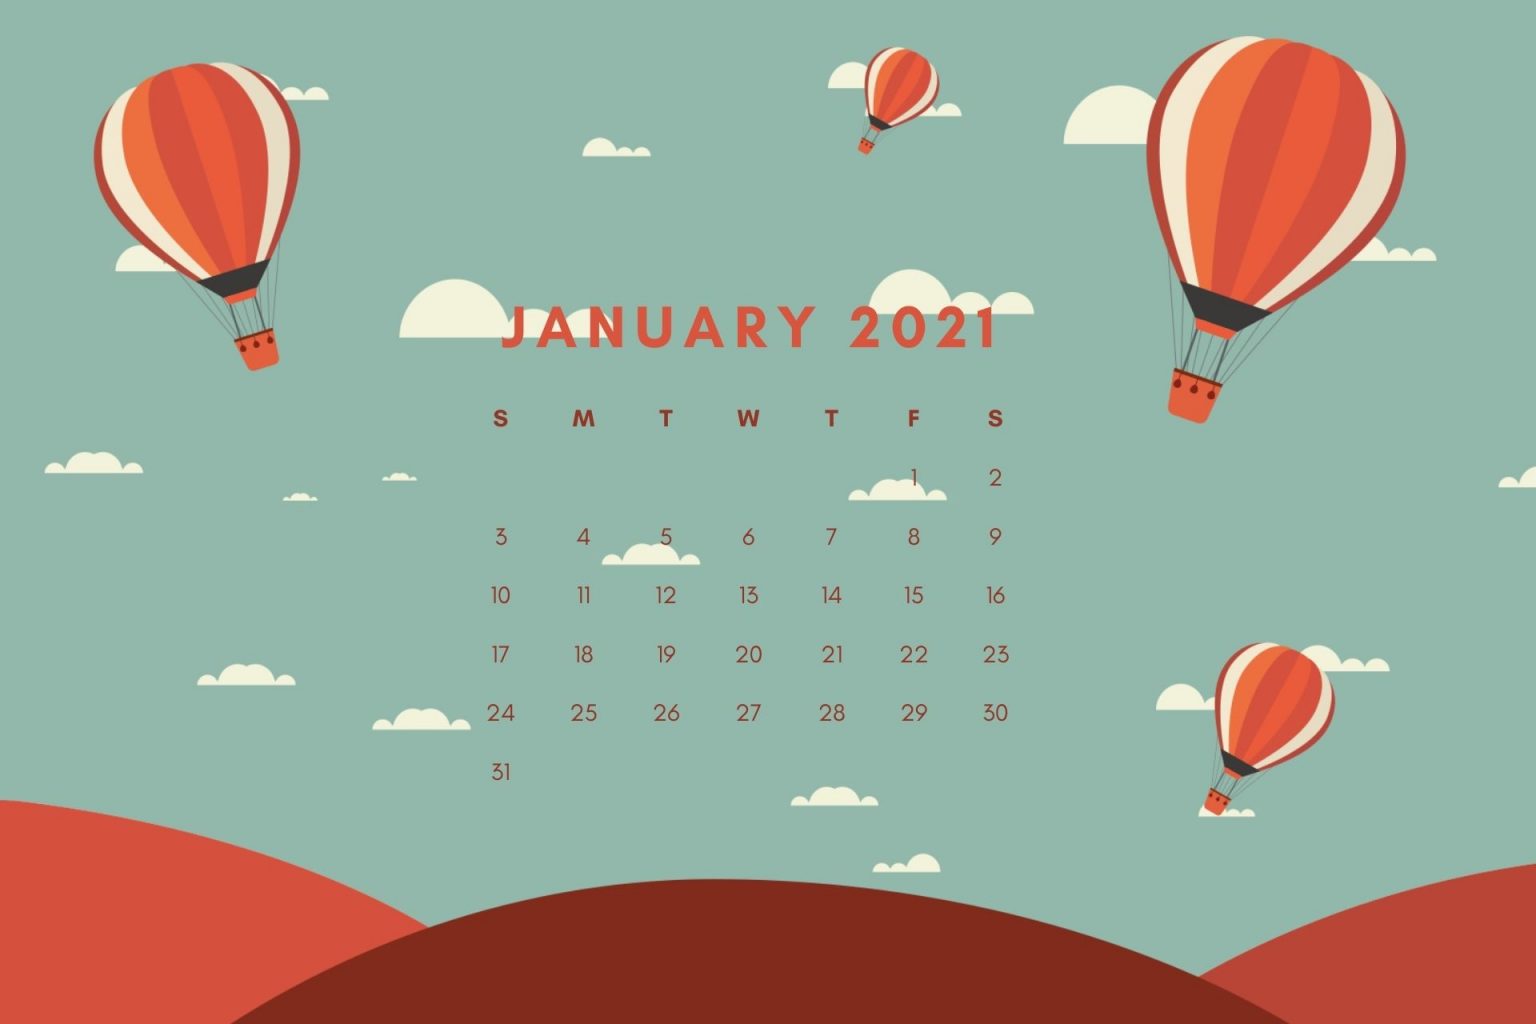 January 2021 Calendar Wallpaper Download